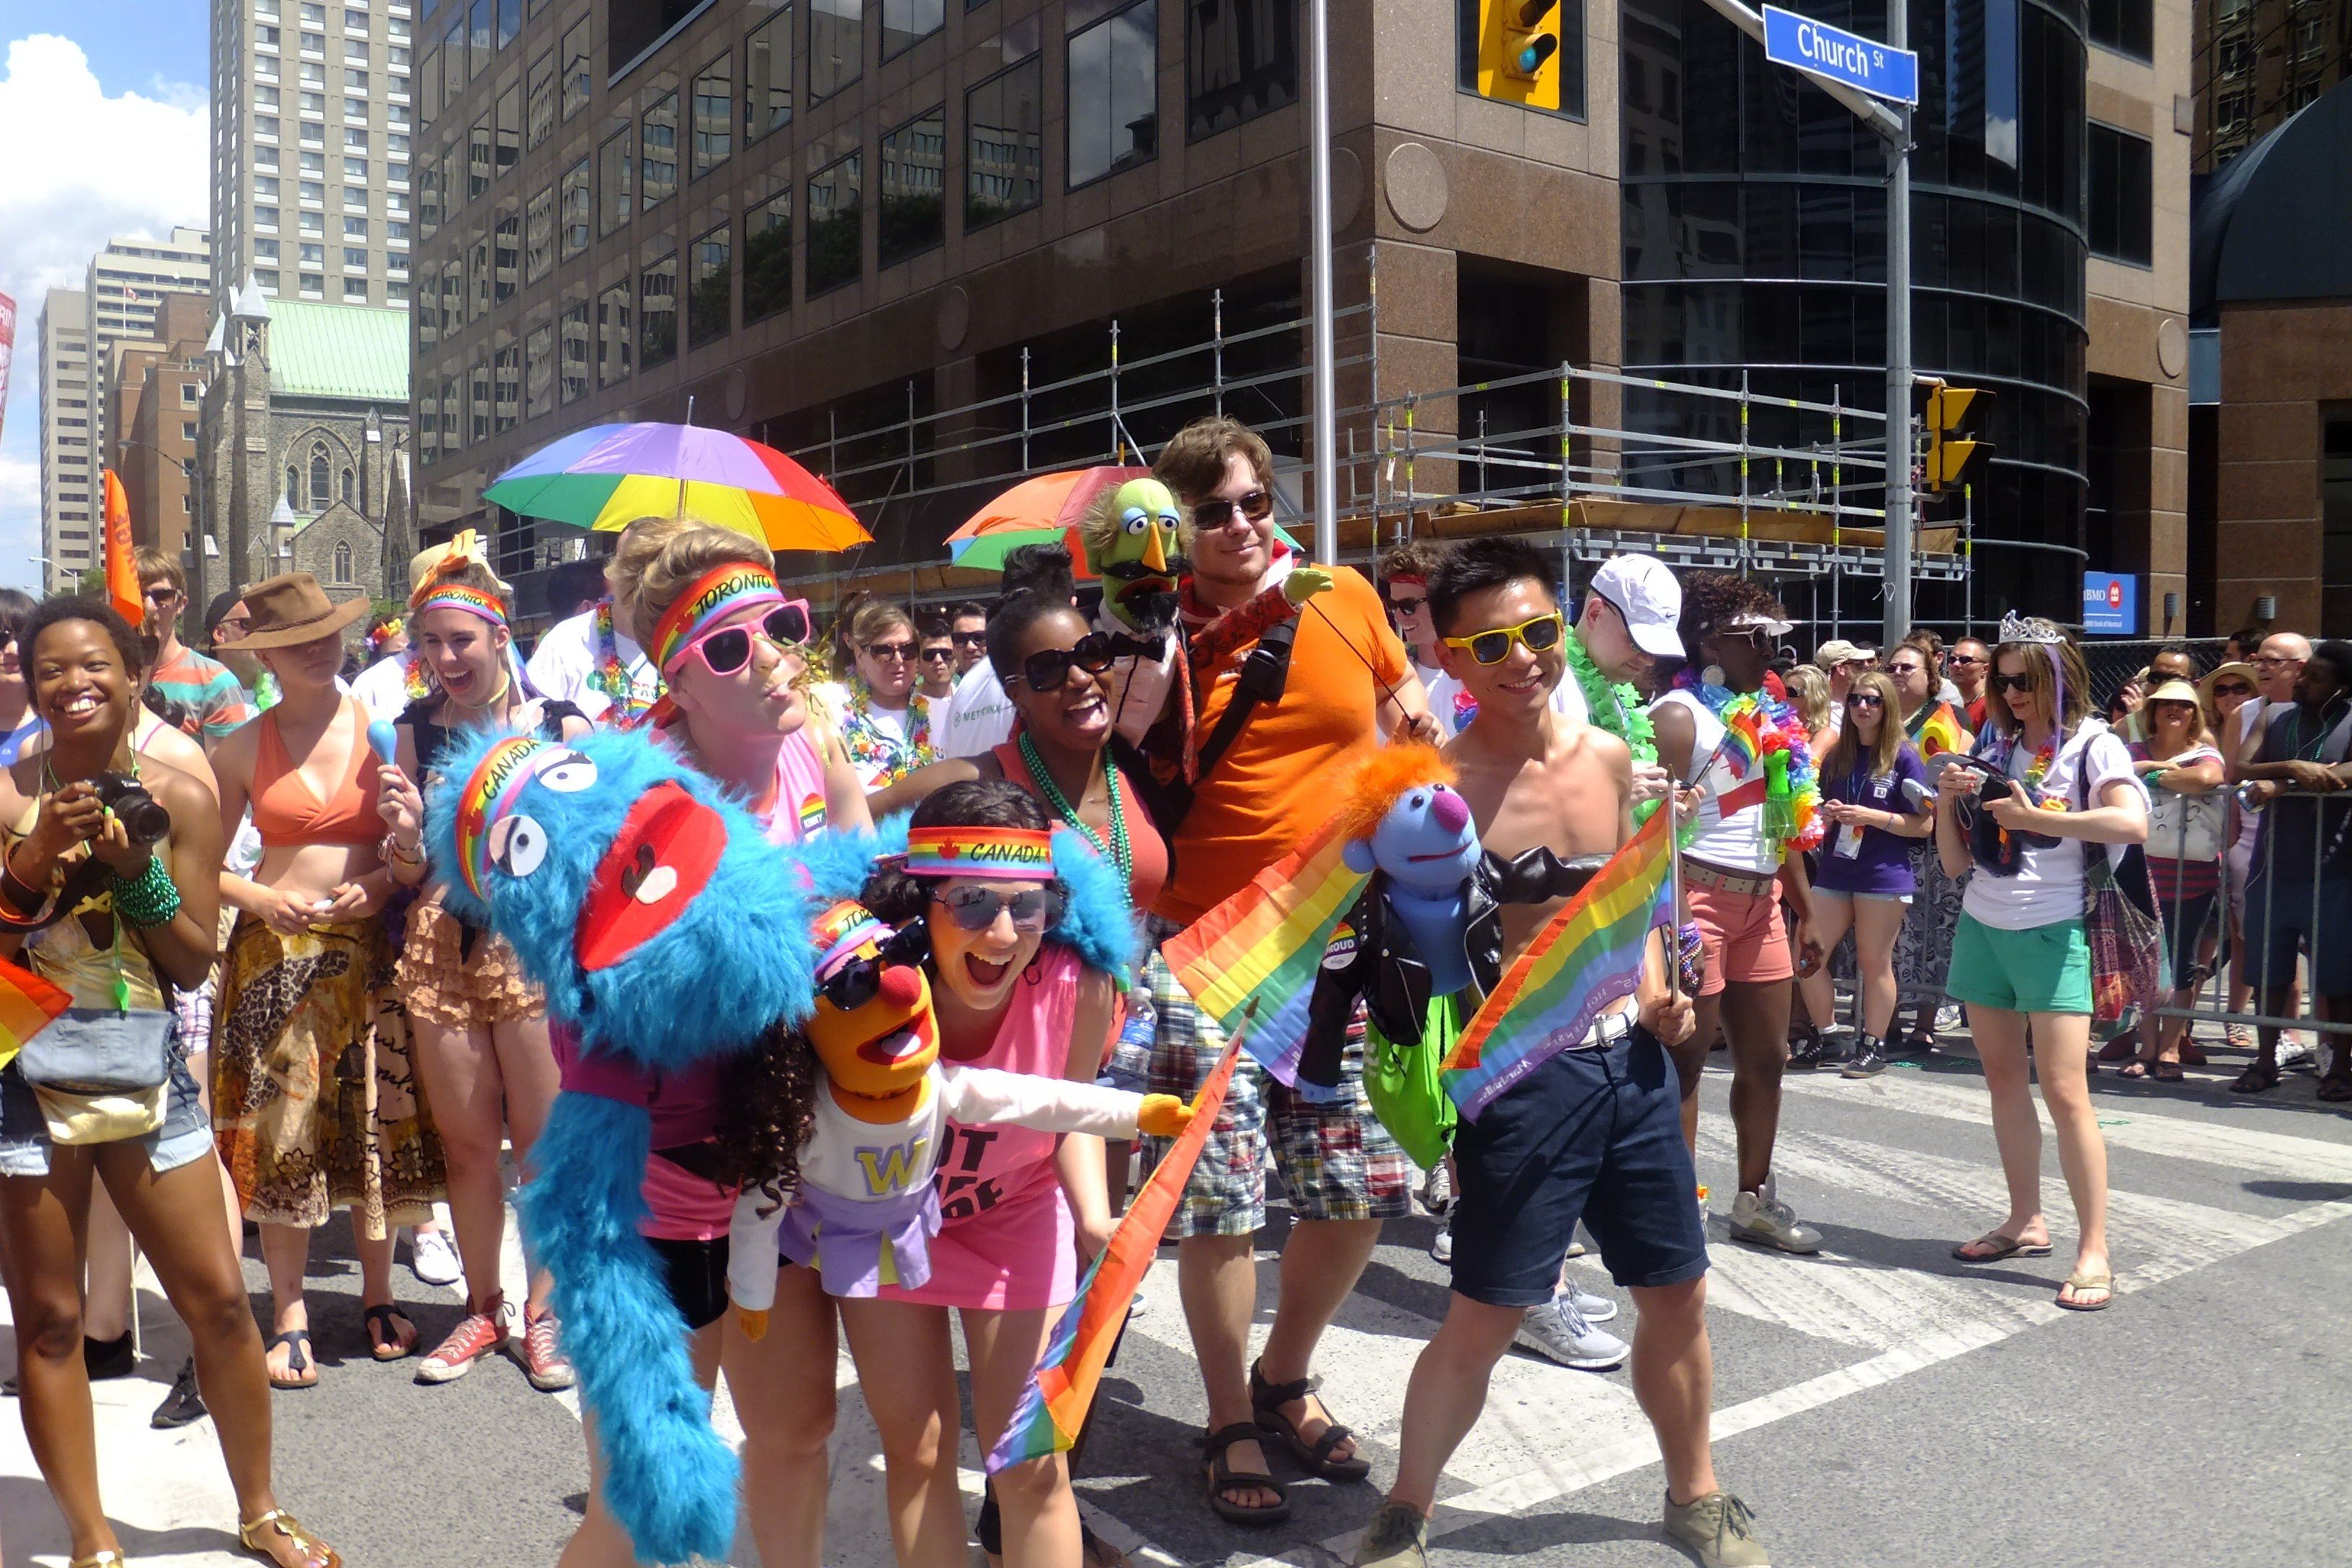 Lady reccomend Toronto gay pride